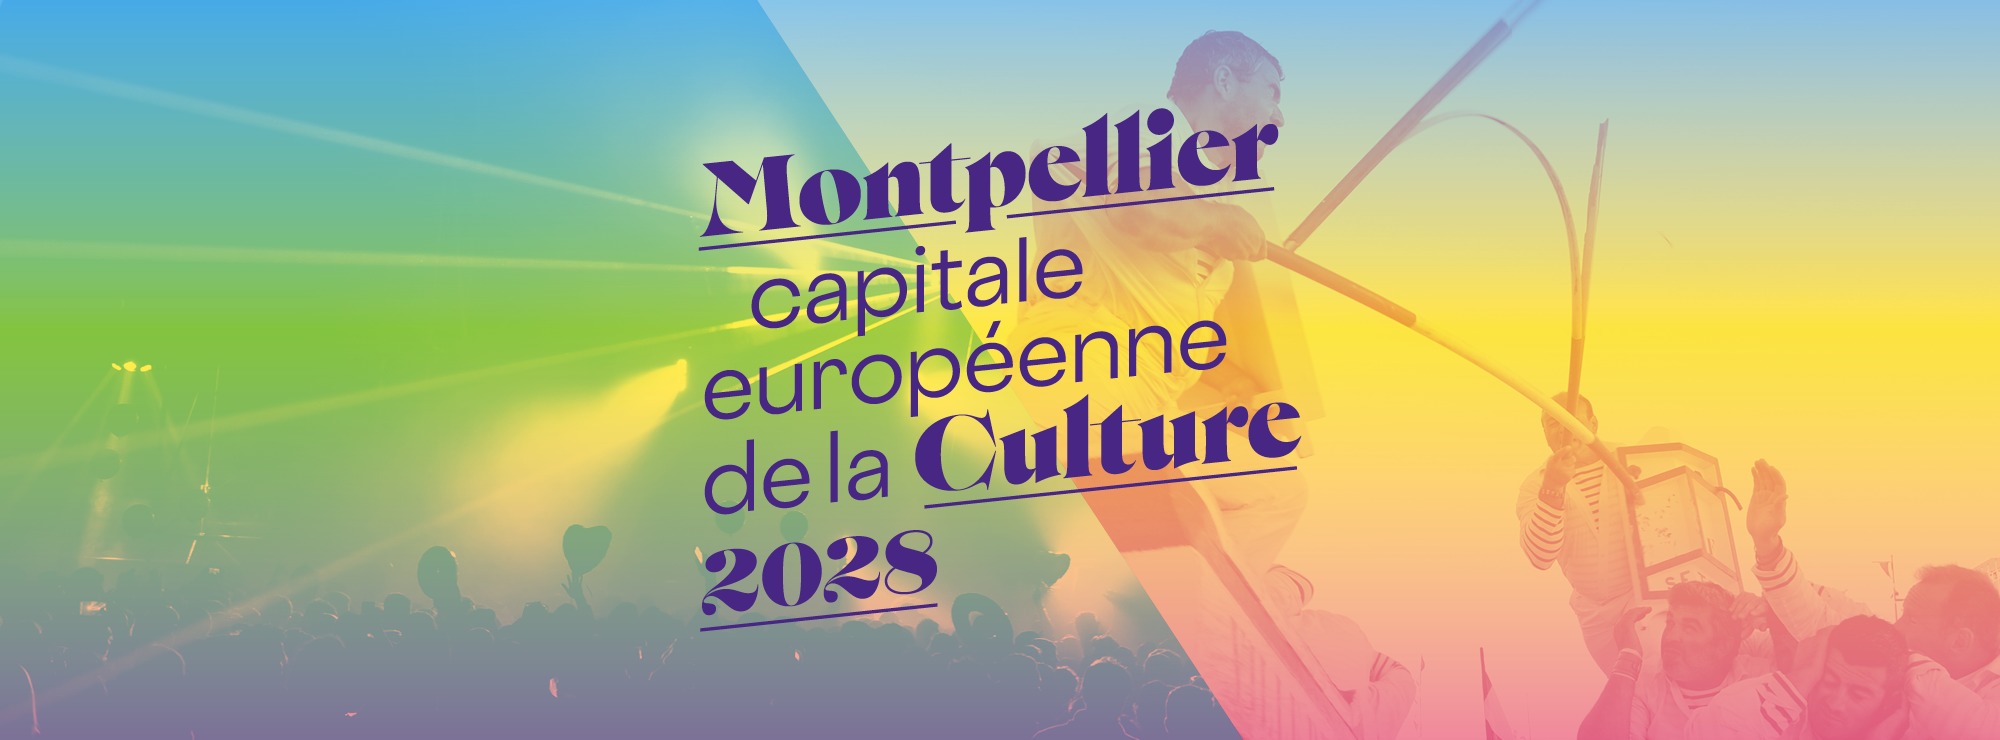 Affiche Montpellier 2028